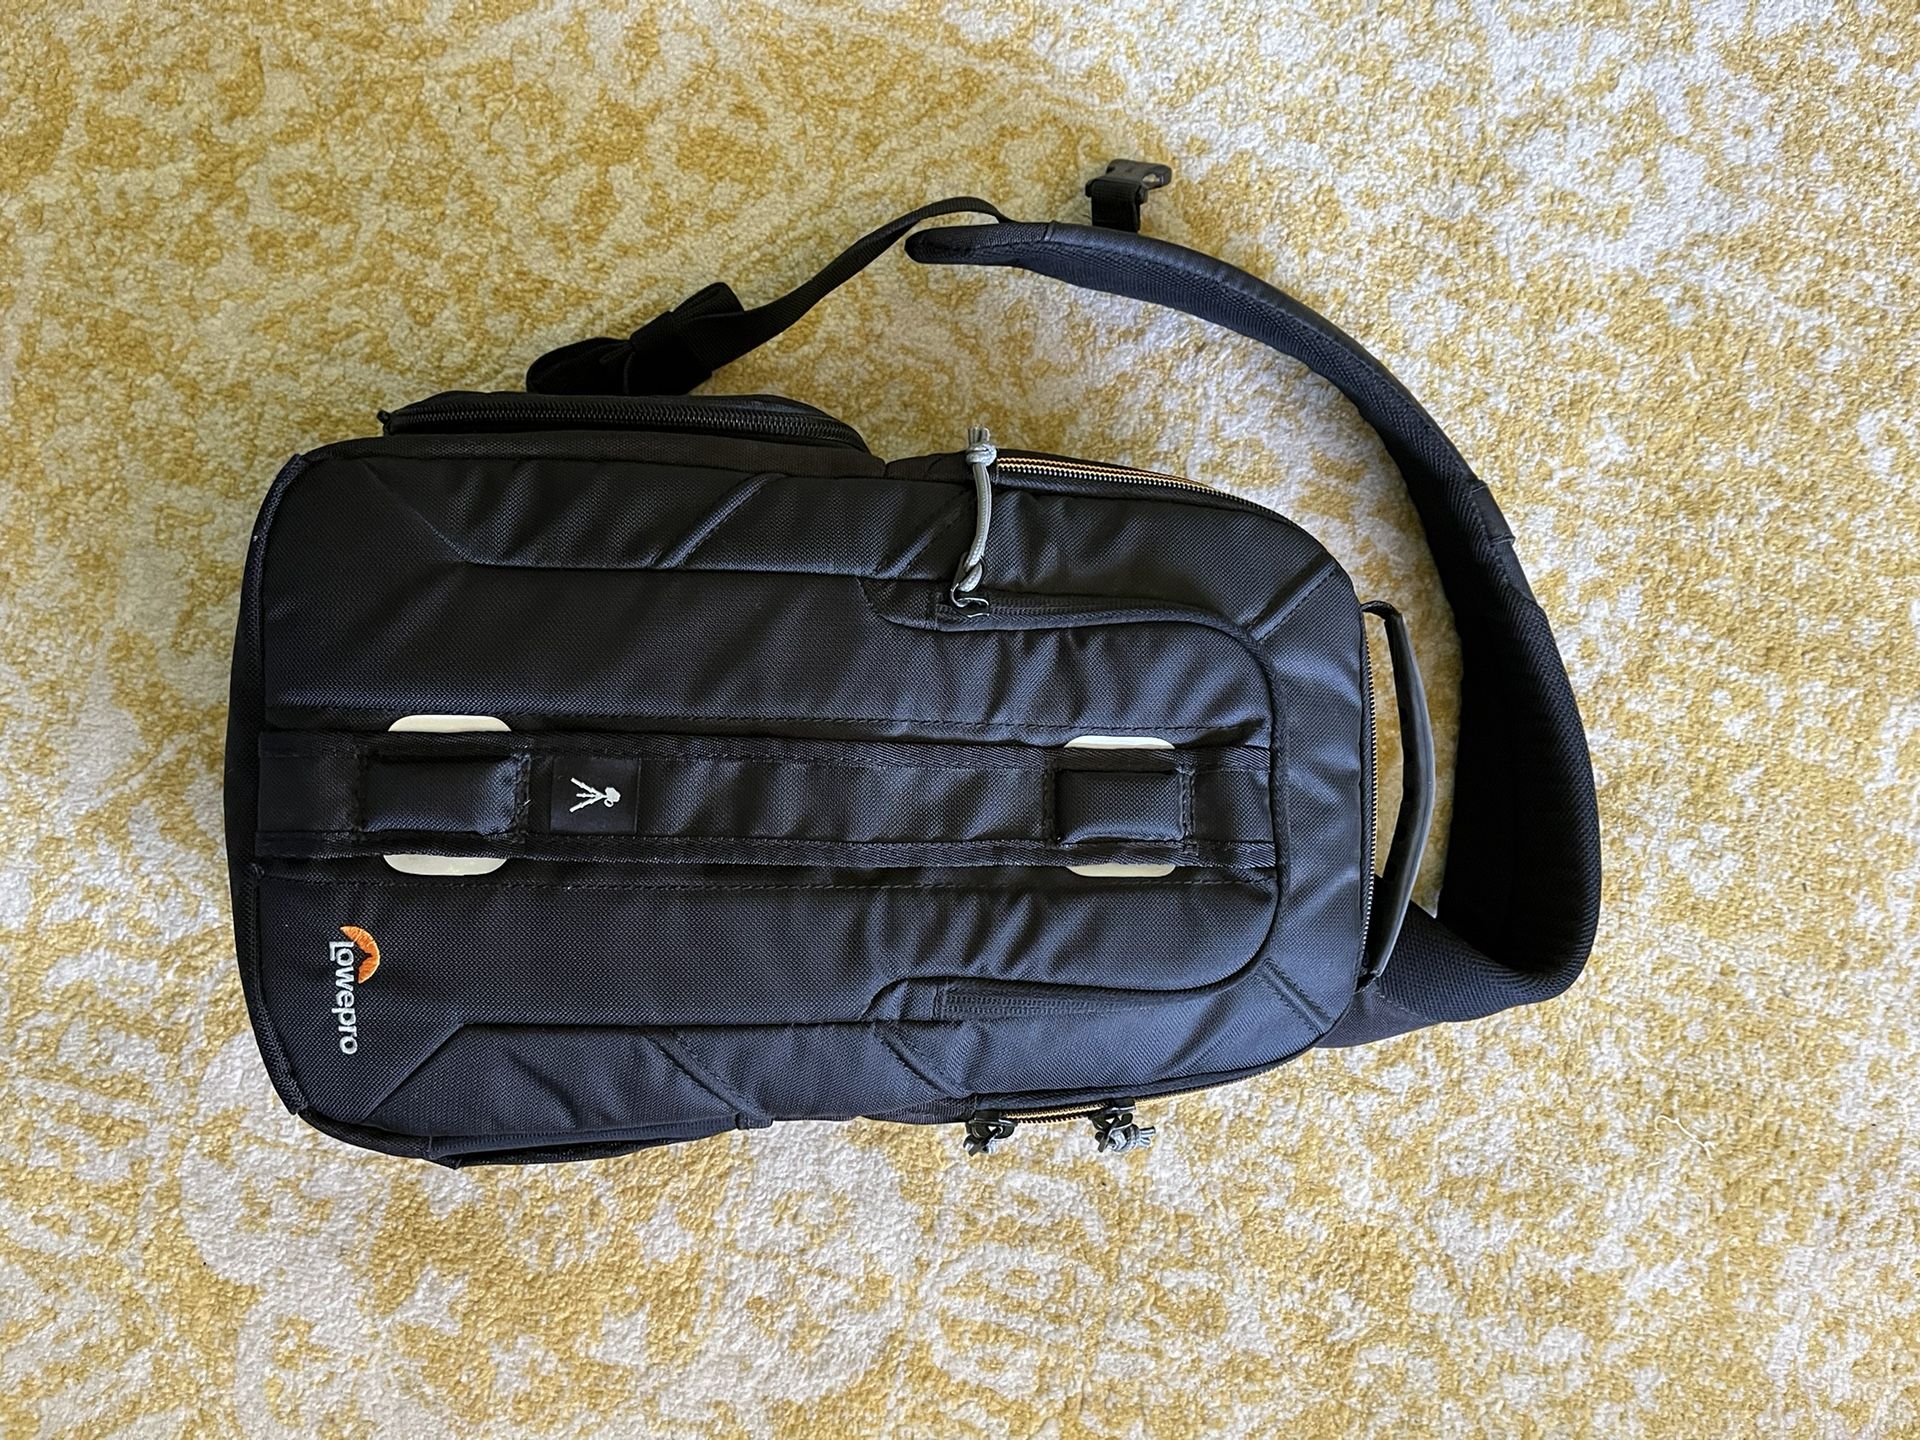 Lowepro Slingshot Camera Backpack 